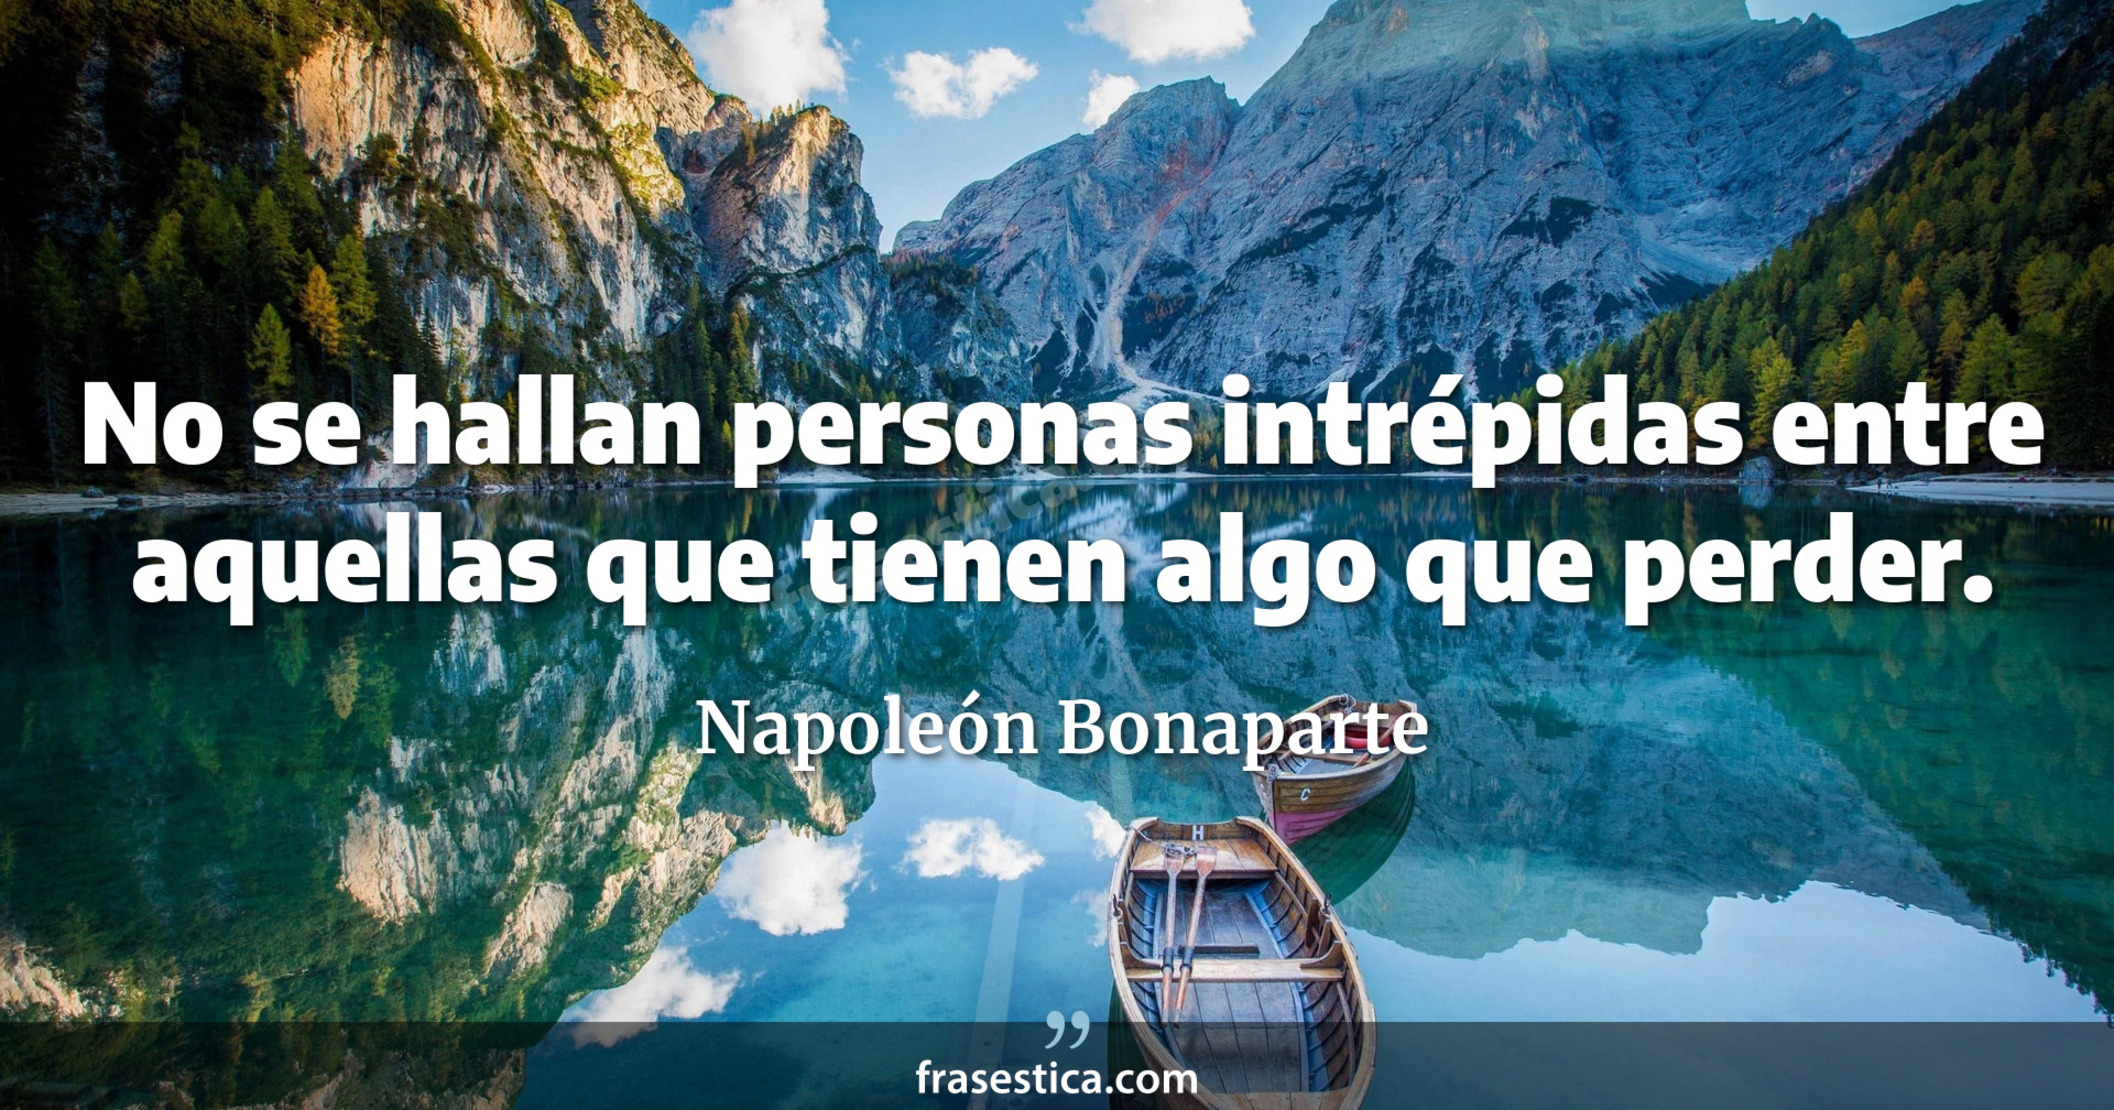 No se hallan personas intrépidas entre aquellas que tienen algo que perder. - Napoleón Bonaparte